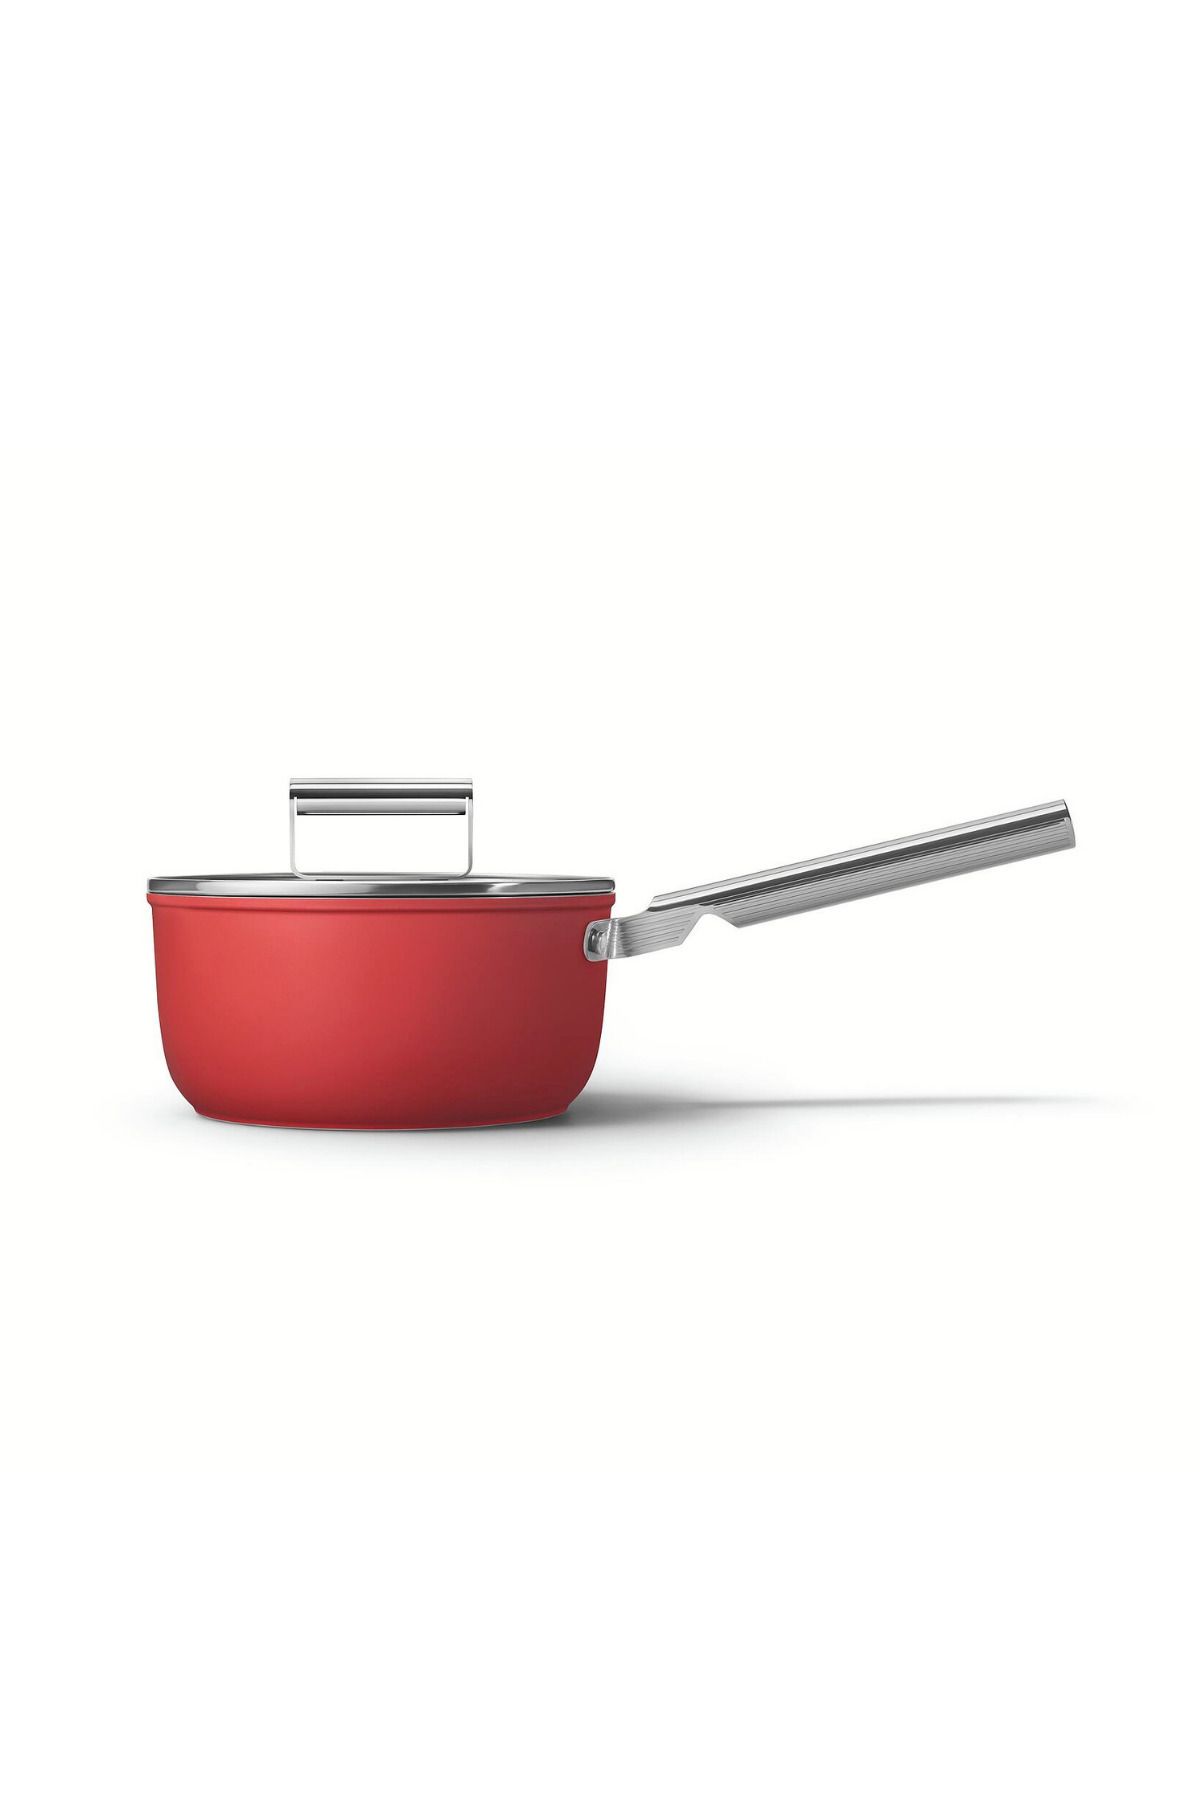 Smeg Cookware 50's Style Kırmızı 20 Cm Sos Tenceresi